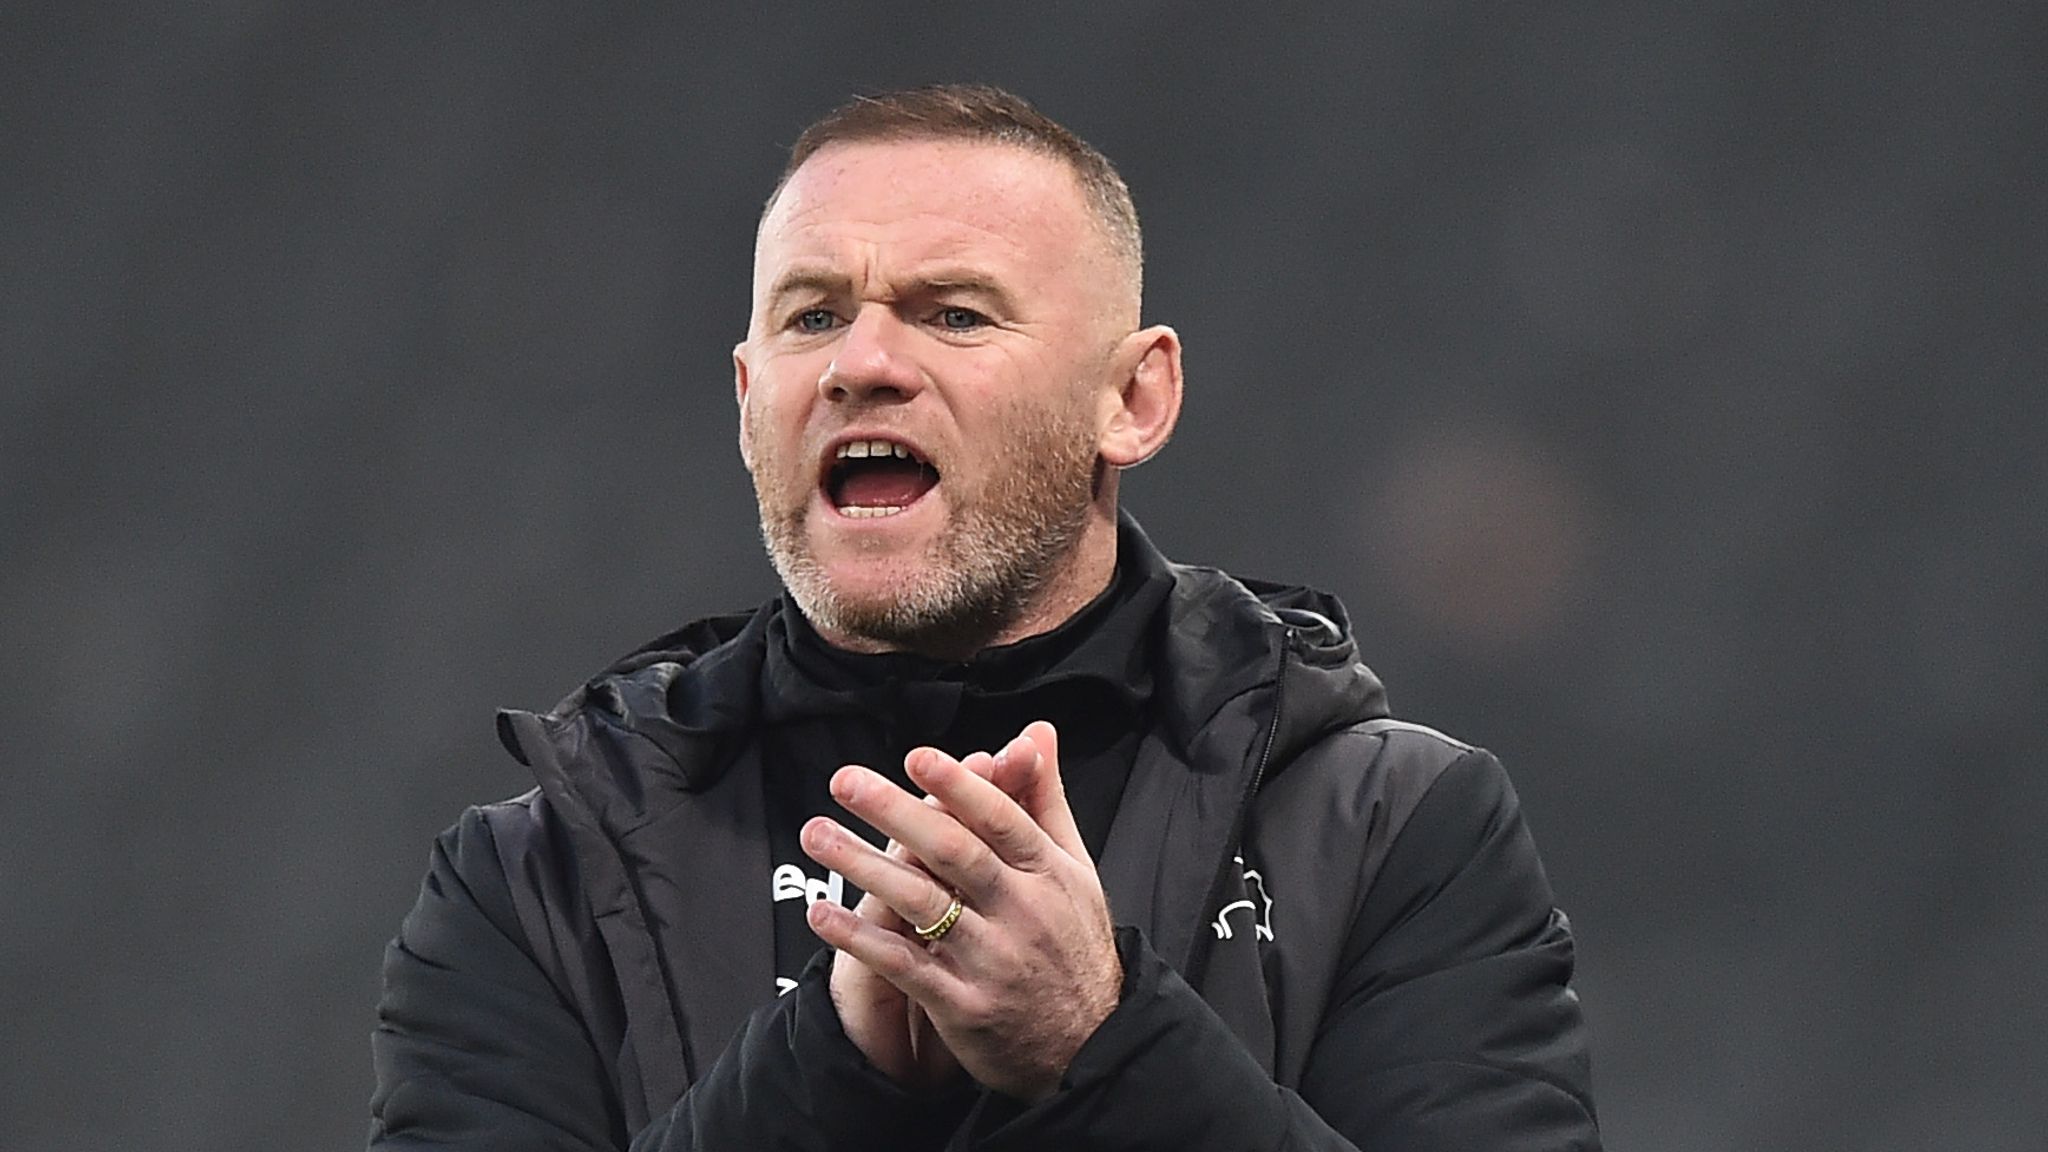 Wayne Rooney arrête et devient entraîneur | KVK MEDIA